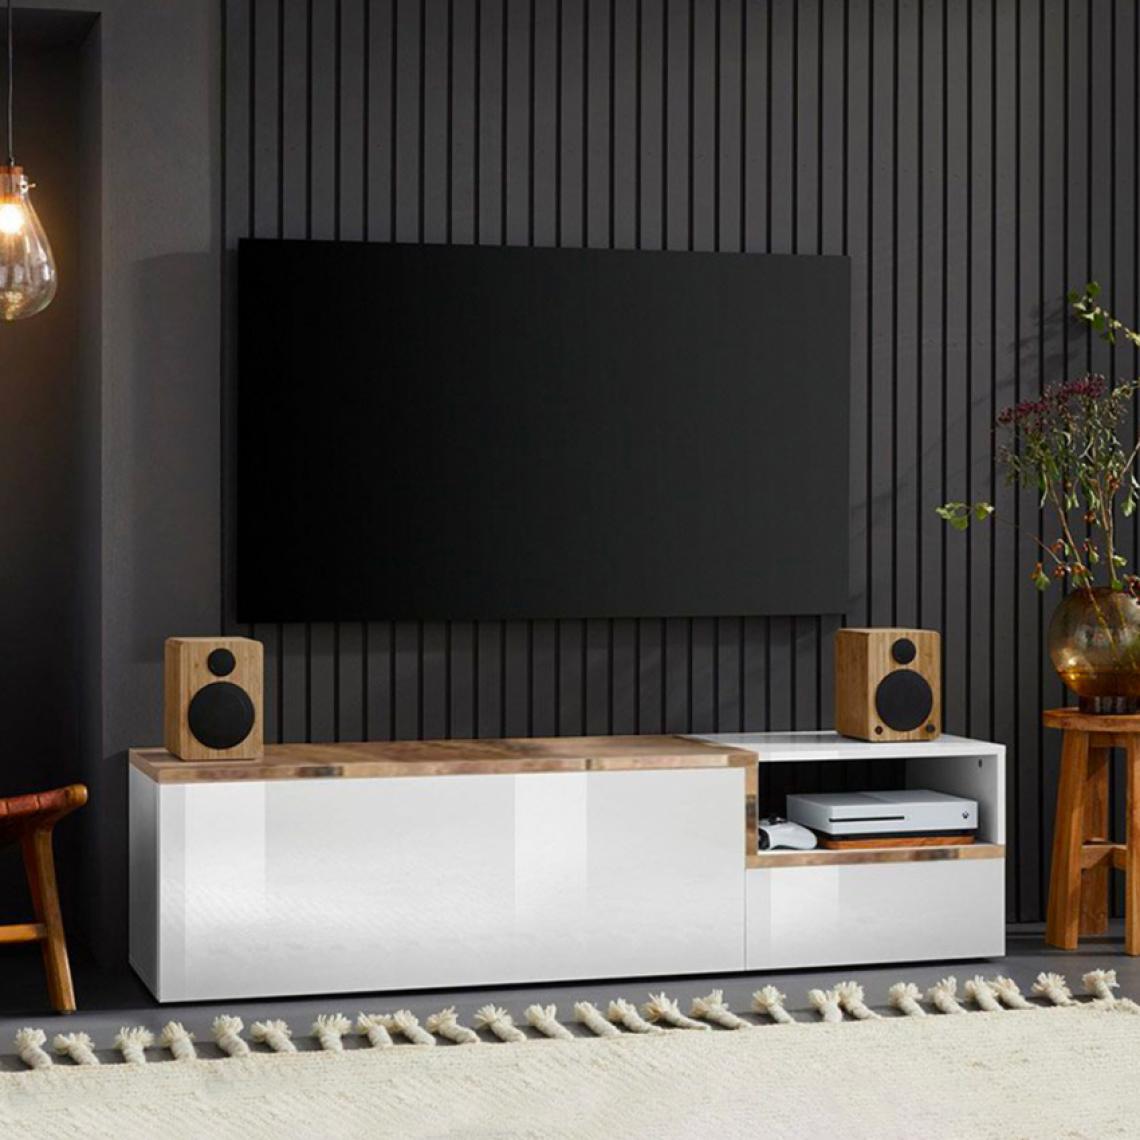 Ahd Amazing Home Design - Meuble TV 160cm 2 Portes 1 Compartiment Design Salon Zet Kiwey Acero M - Meubles TV, Hi-Fi